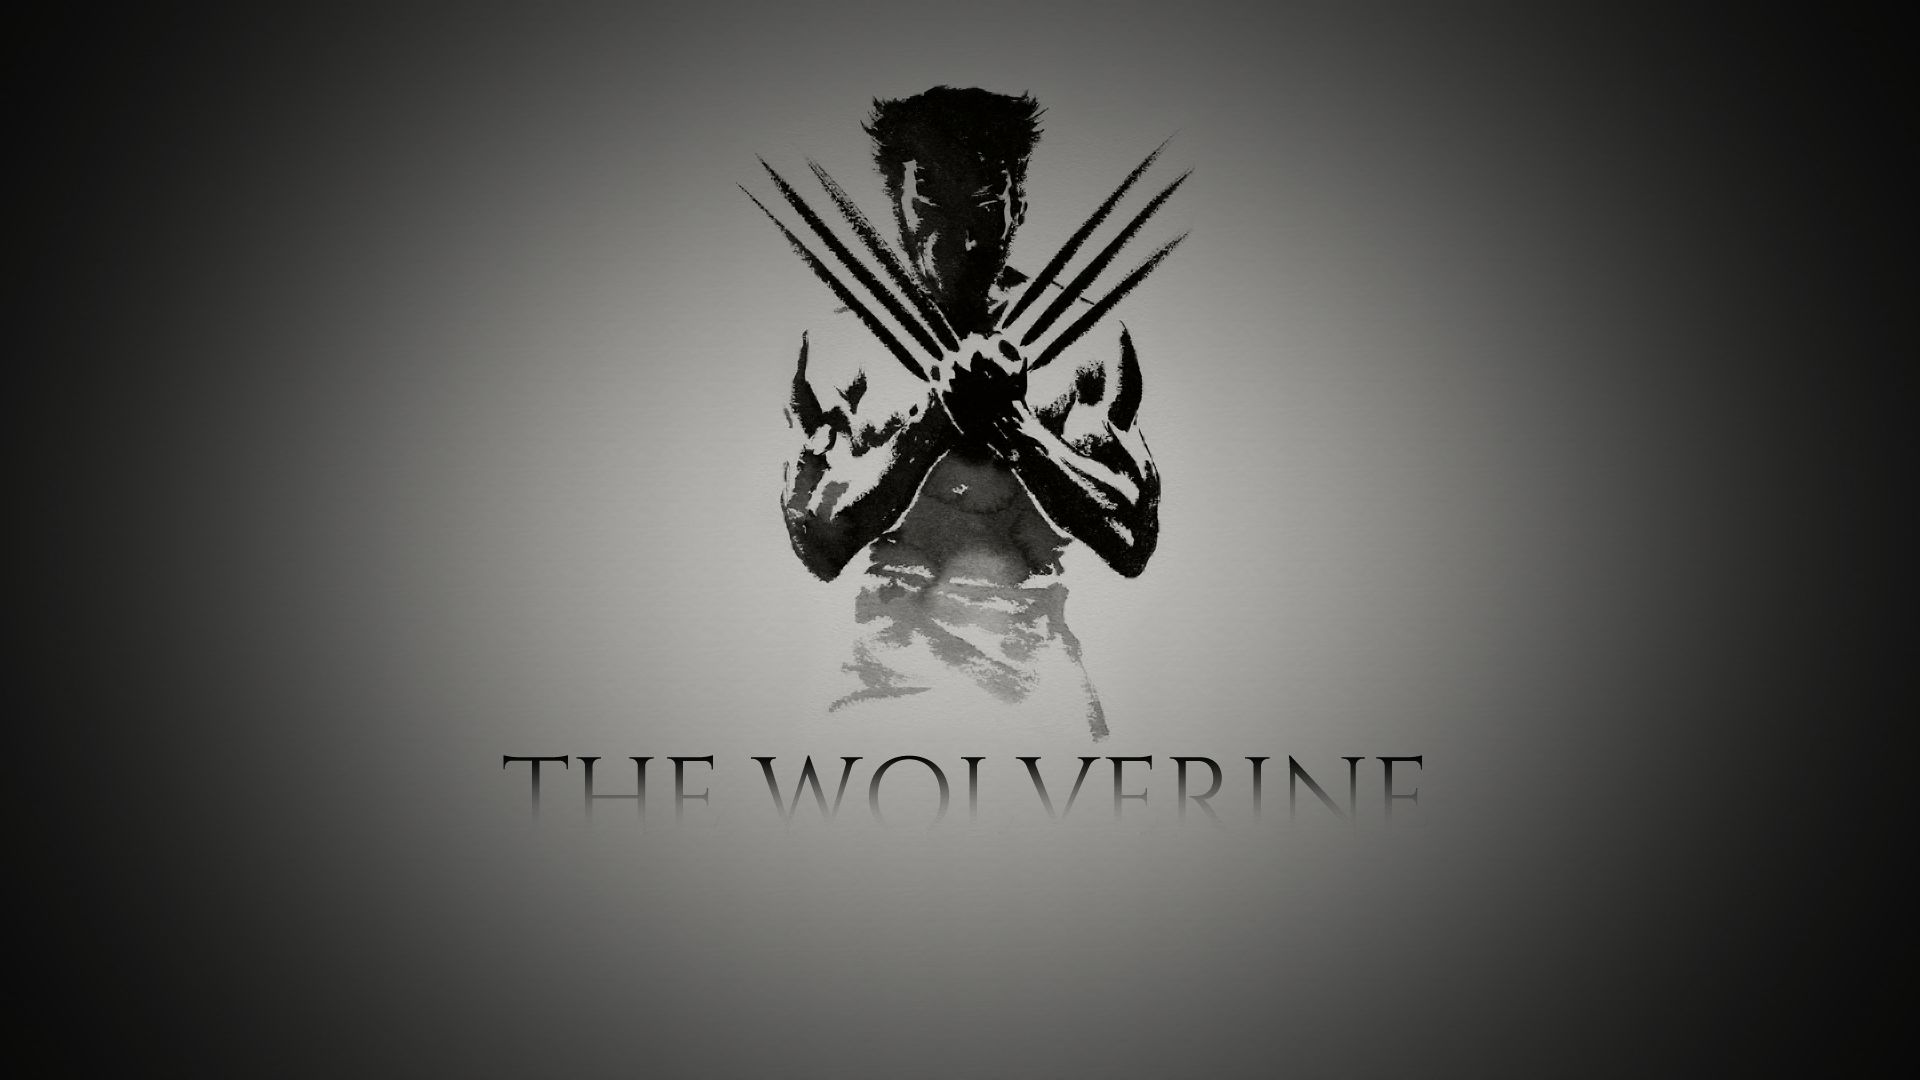 x men, the wolverine, movie 32K